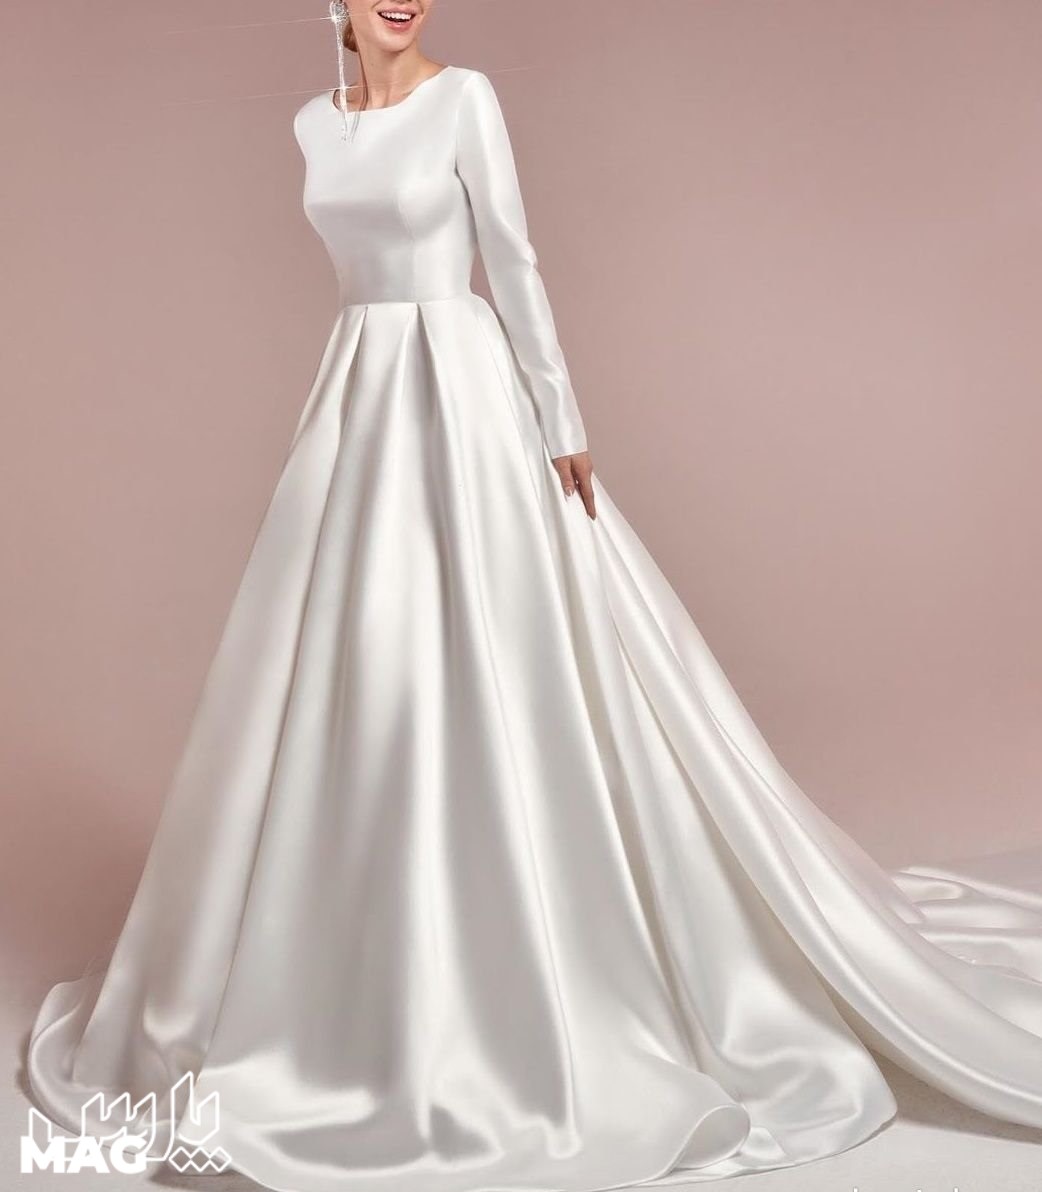 لباس ساده ی عروس - مدل لباس عروس پوشیده جدید